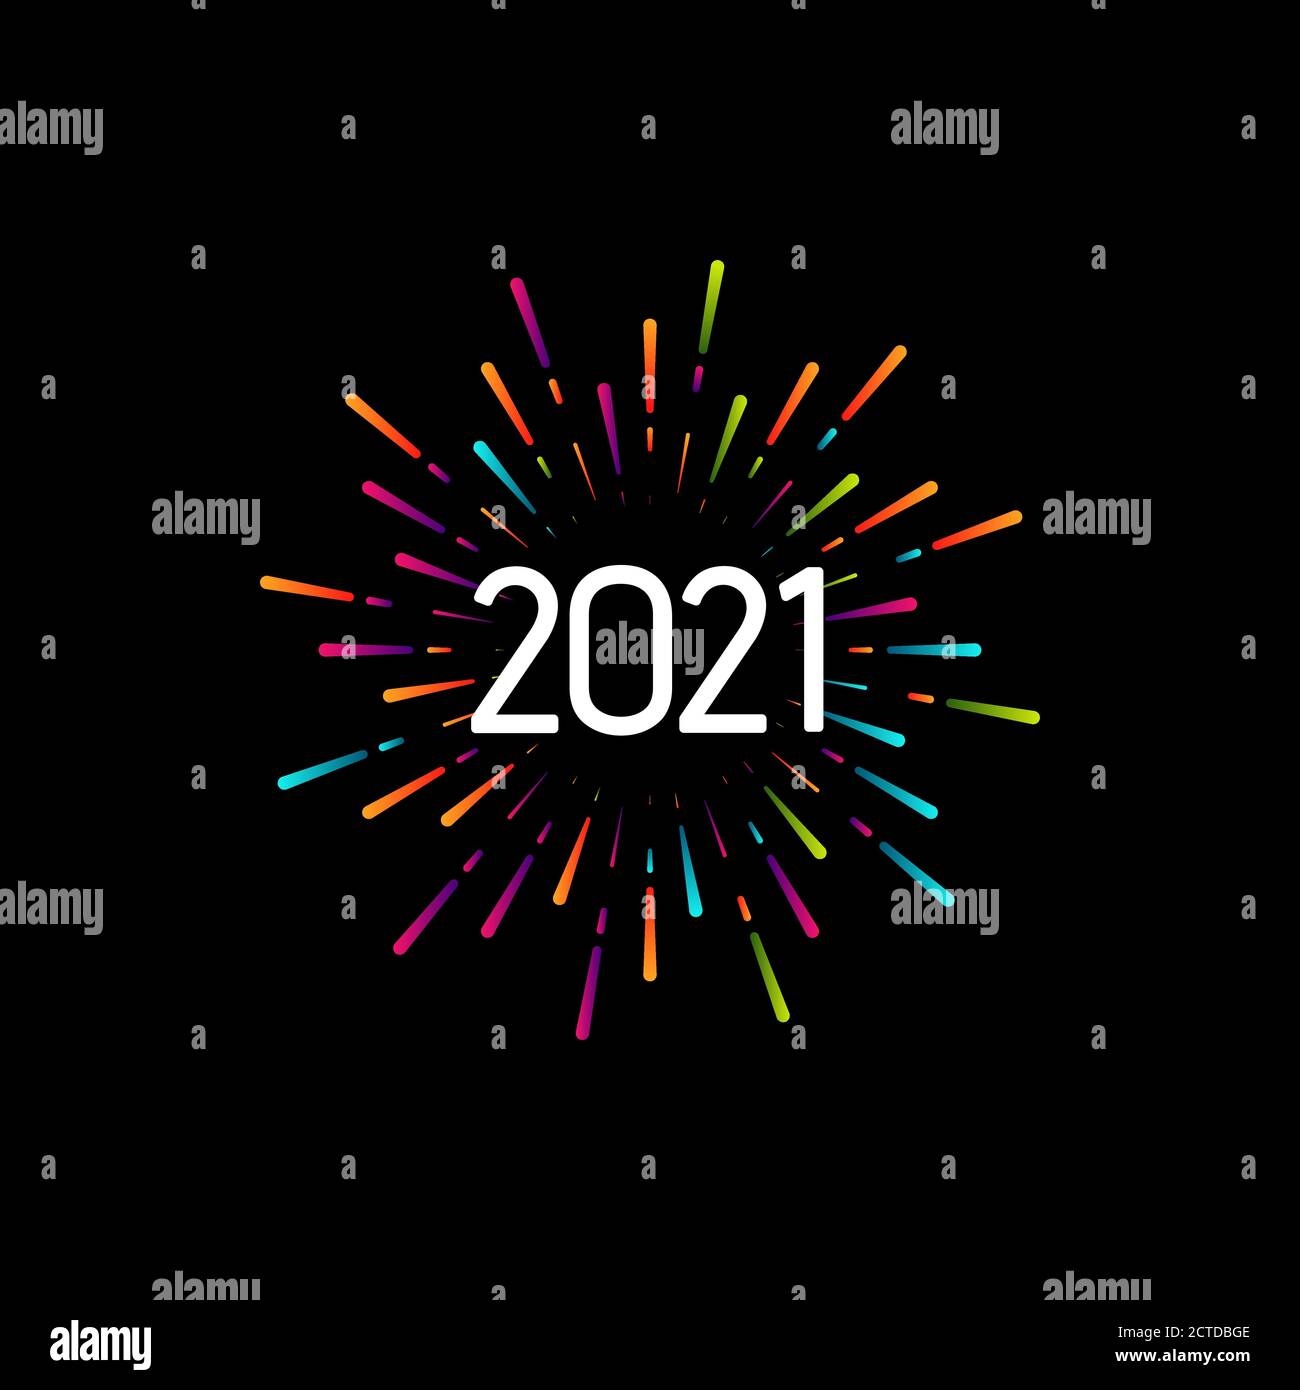 Bonne année 2021. Illustration vectorielle de Noël avec composition typographique de fête. Étiquette colorée avec 2021 chiffres et foyer multicolore graphique Illustration de Vecteur